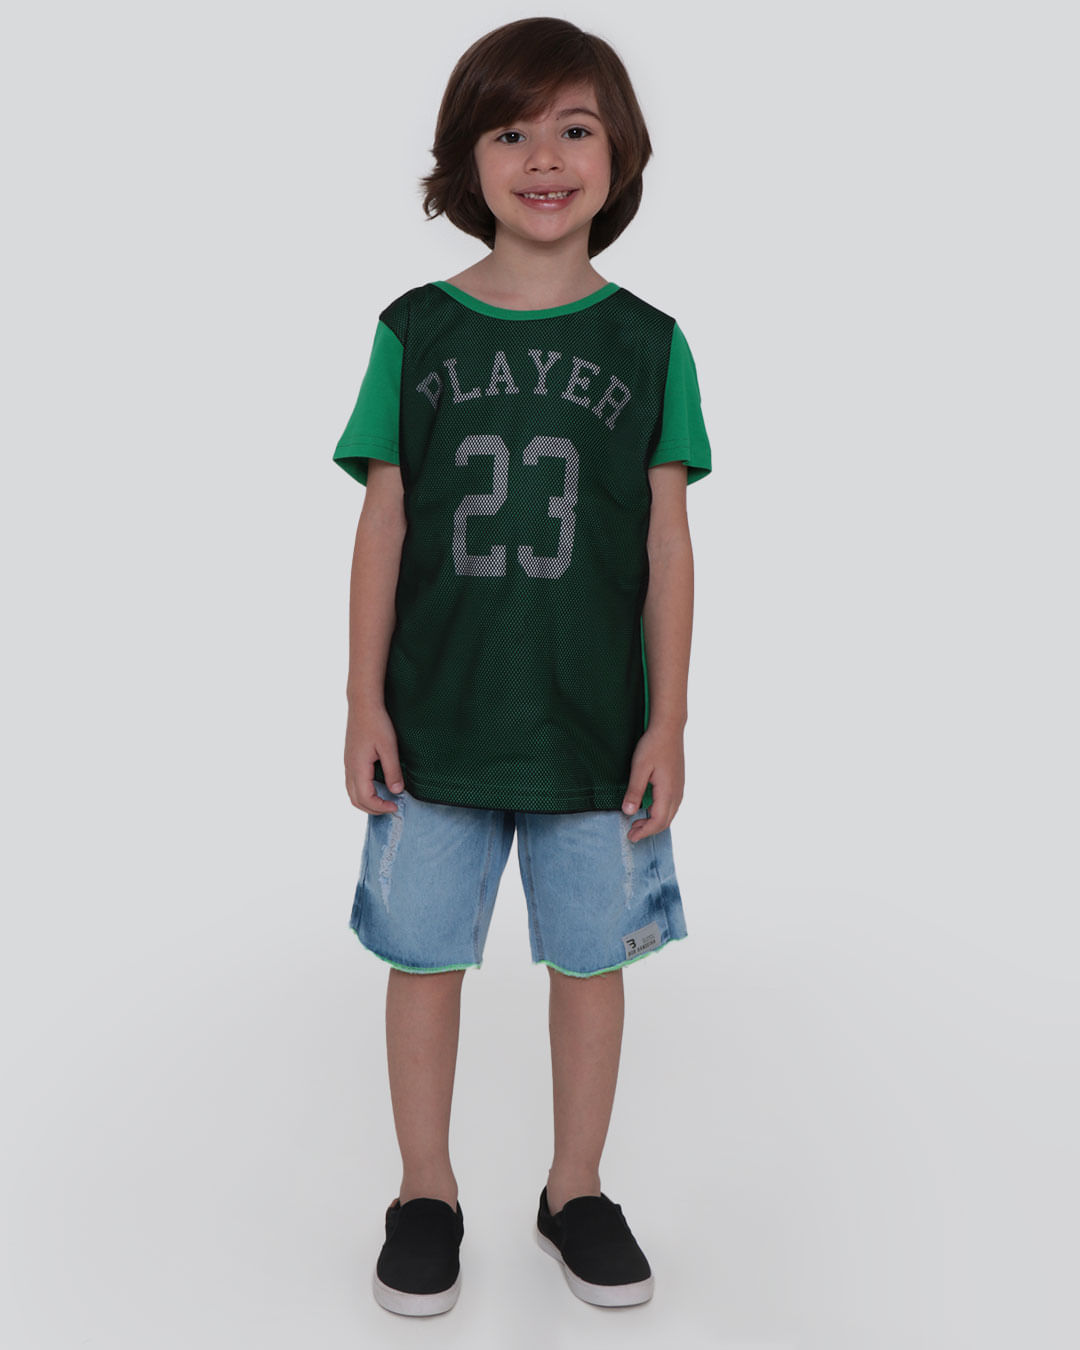 Camiseta-Infantil-Player-23-Verde